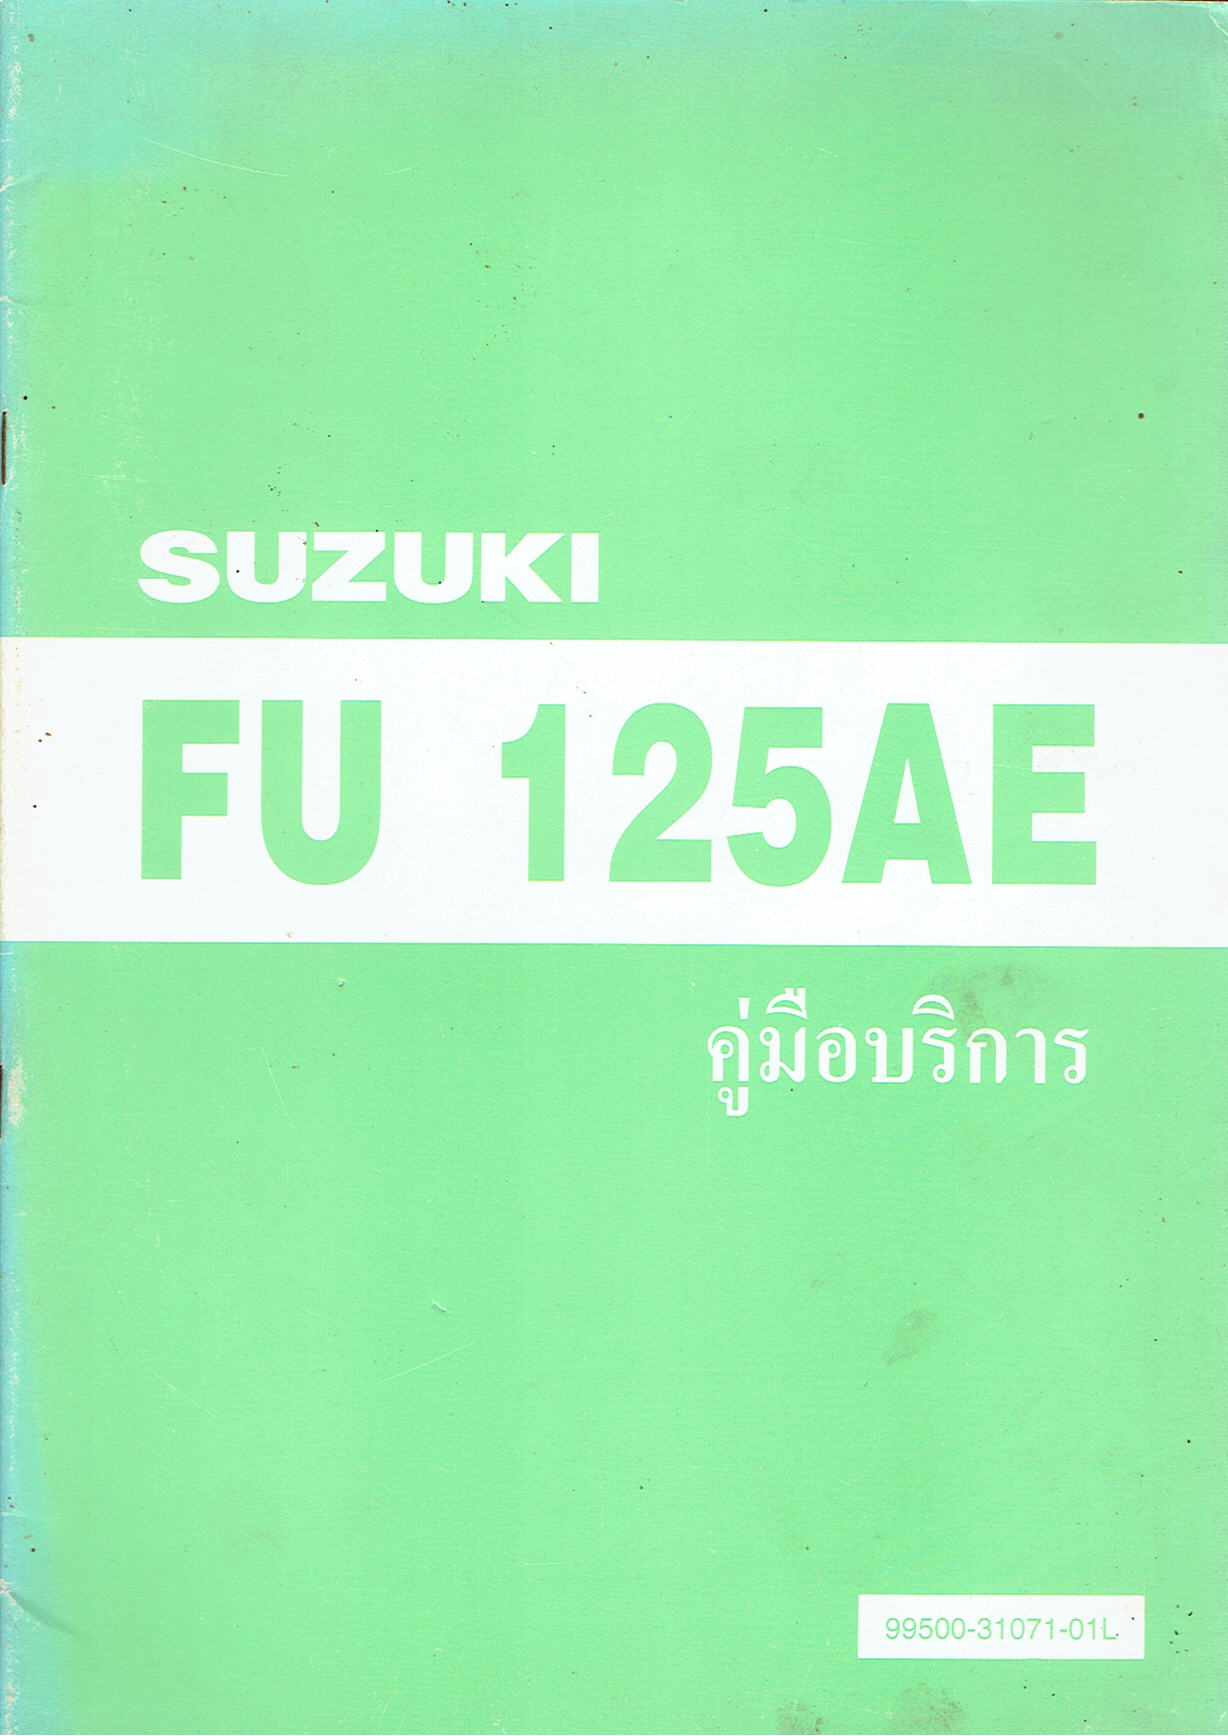 FU125AE